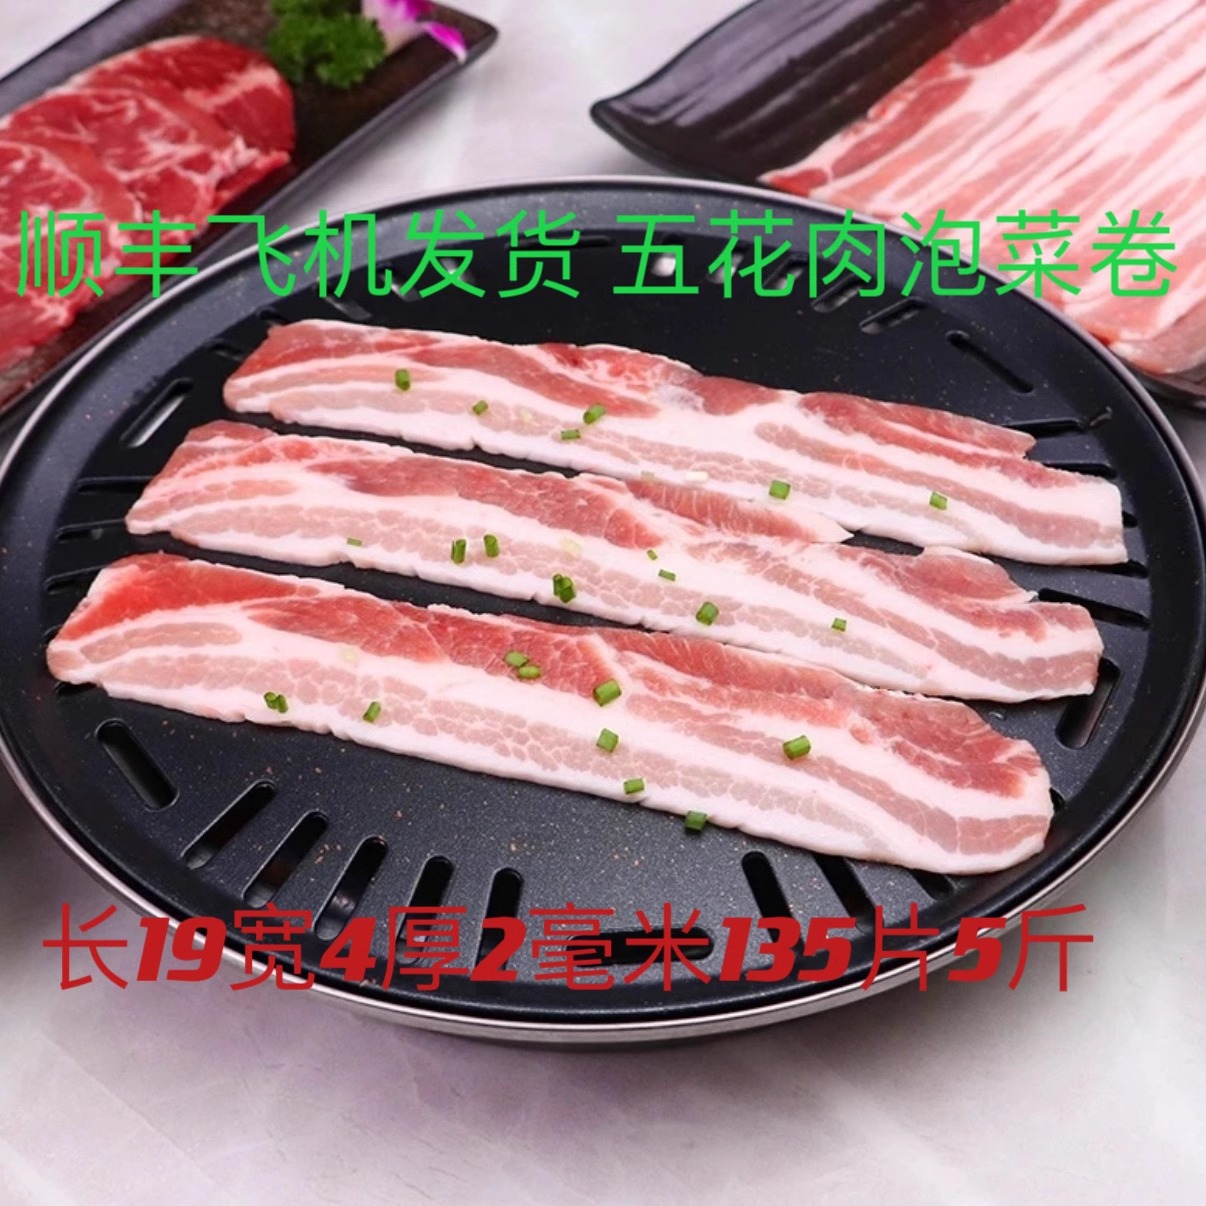 韩式烤肉原切五花肉商用网红烧鸟猪肉泡菜卷切片东北烤肉烧烤冷冻